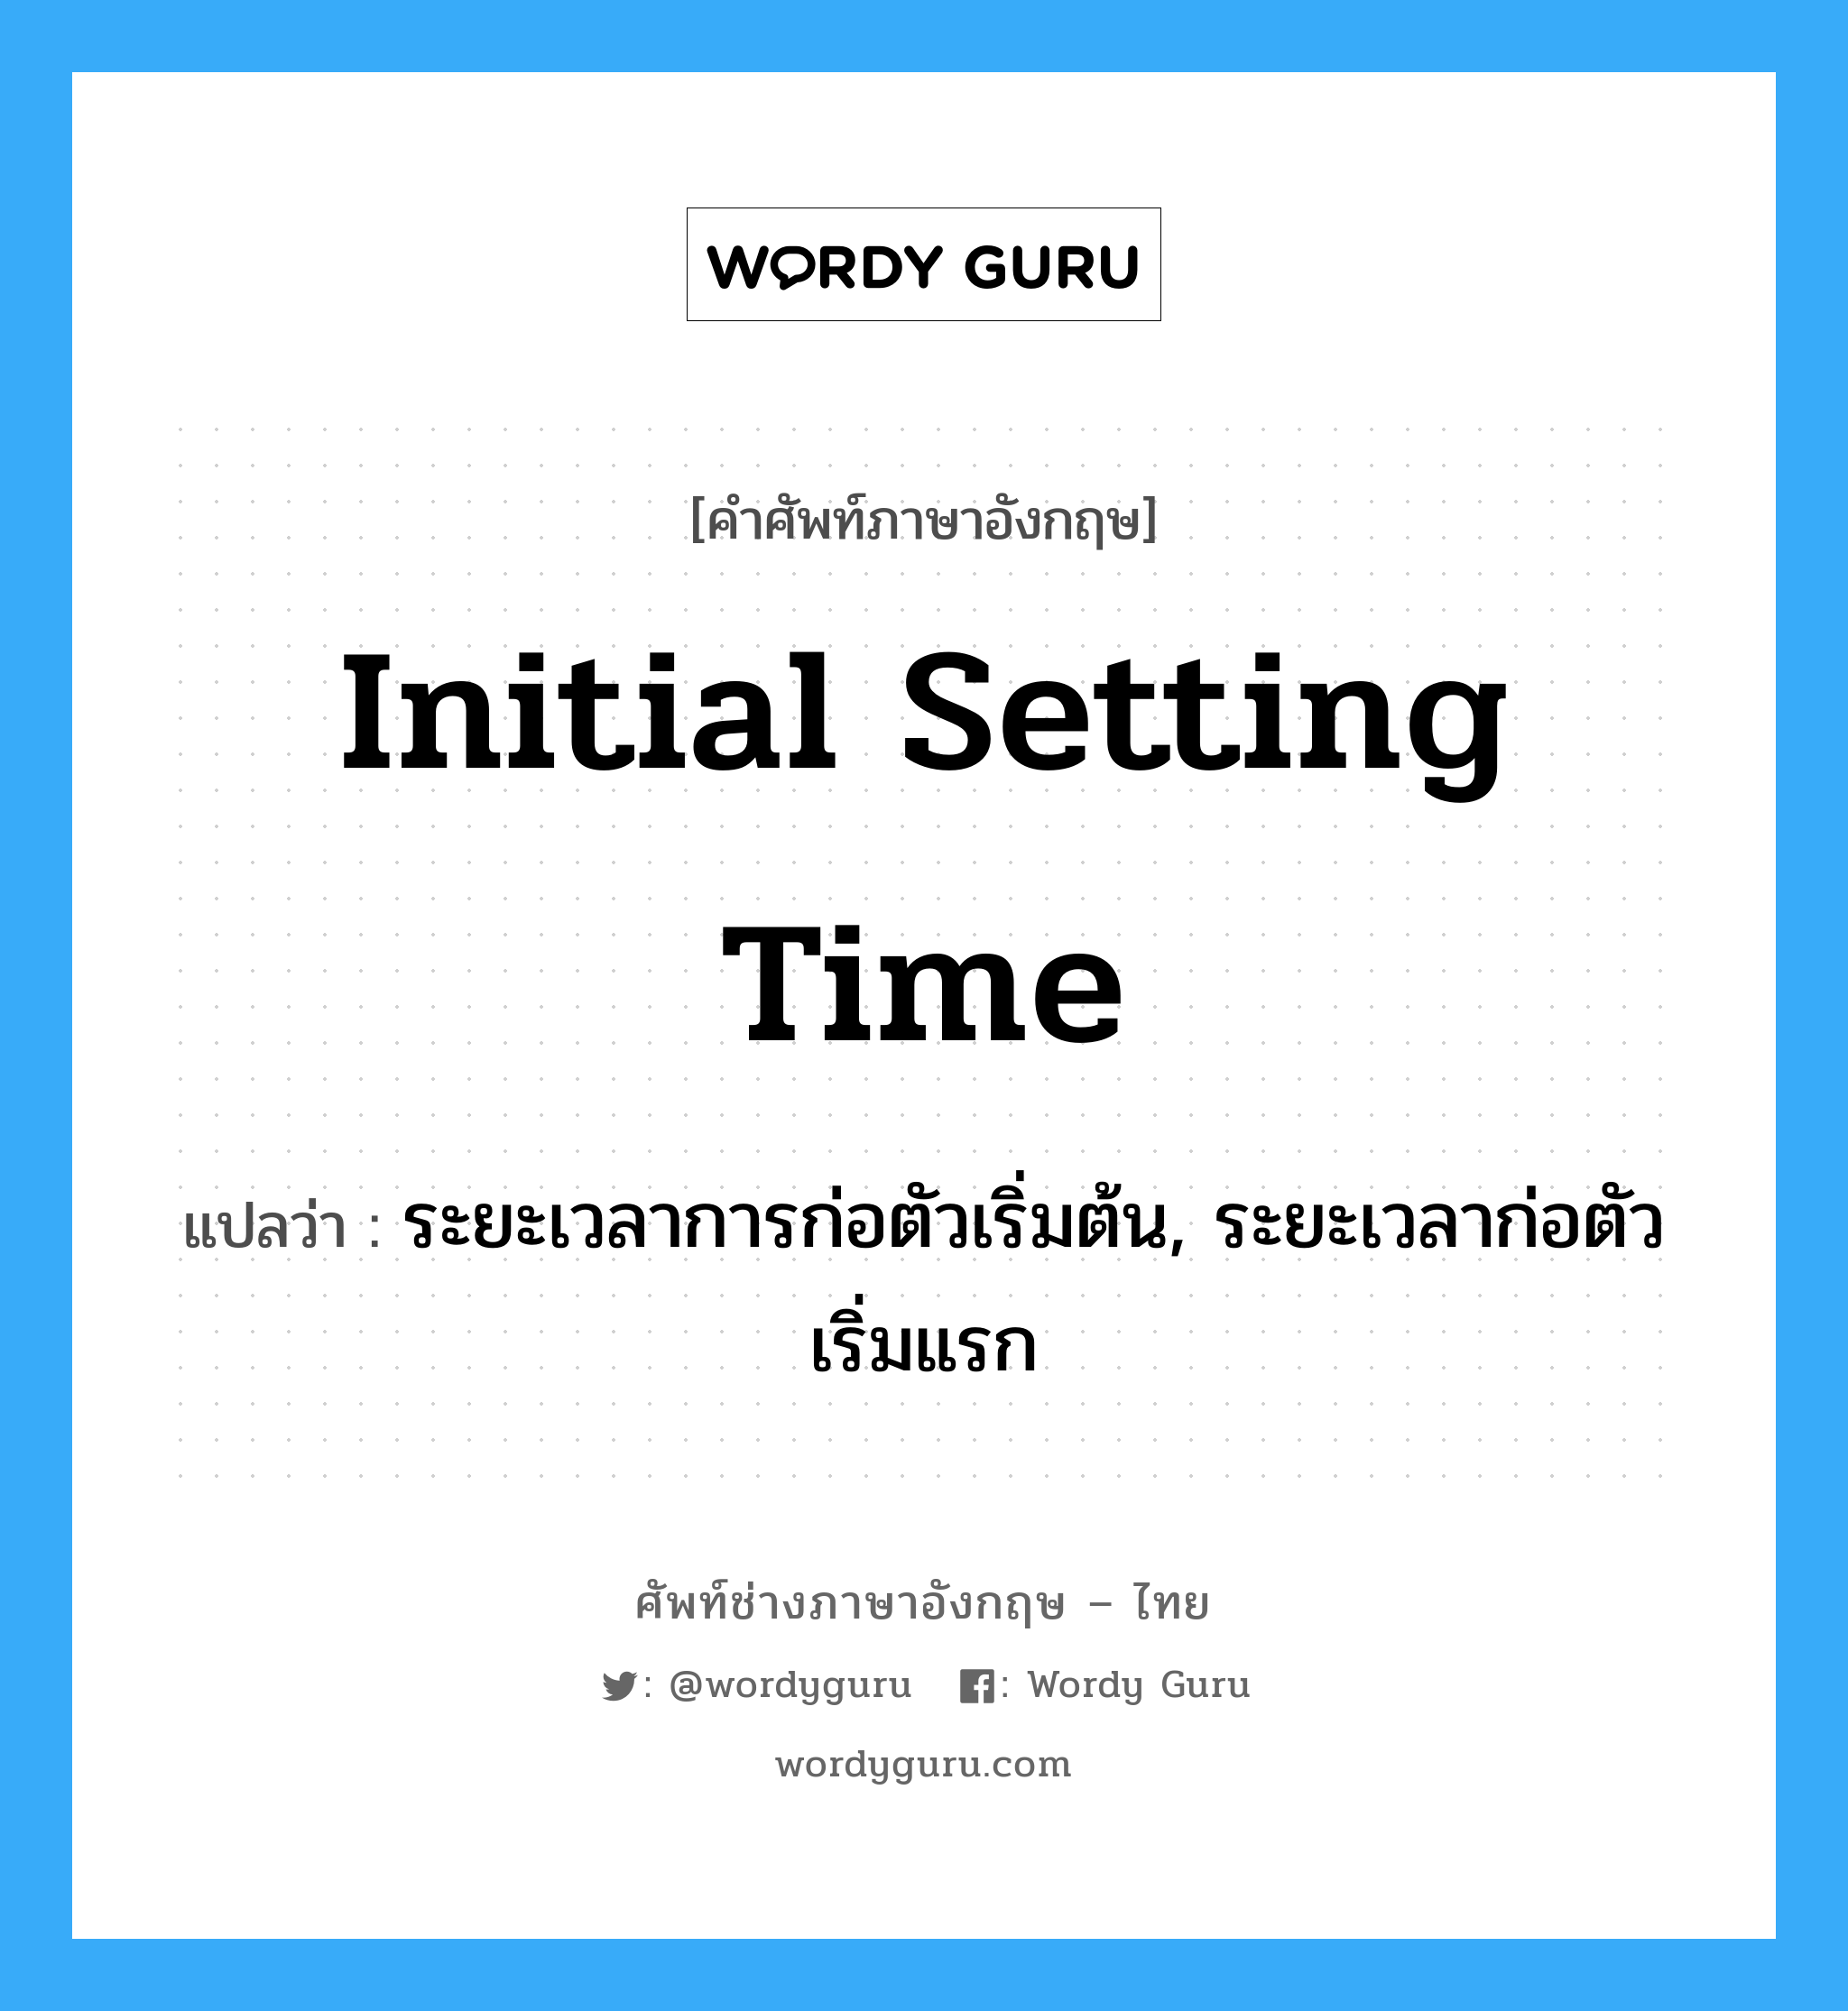 initial setting time แปลว่า?, คำศัพท์ช่างภาษาอังกฤษ - ไทย initial setting time คำศัพท์ภาษาอังกฤษ initial setting time แปลว่า ระยะเวลาการก่อตัวเริ่มต้น, ระยะเวลาก่อตัวเริ่มแรก